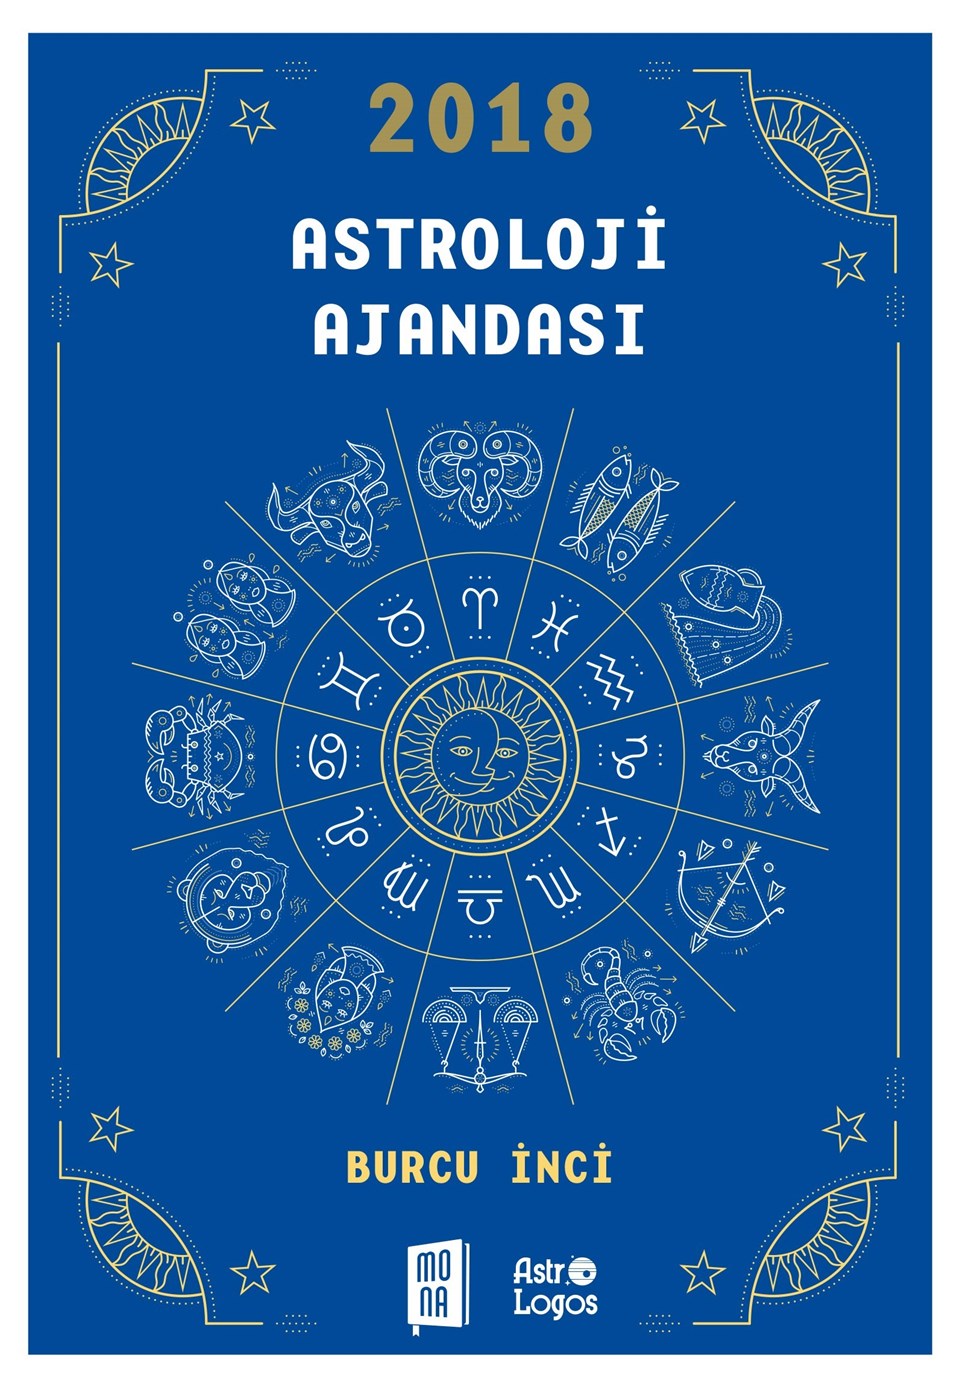 Astrolog Burcu İnci’den 2018 astroloji ajandası - 1